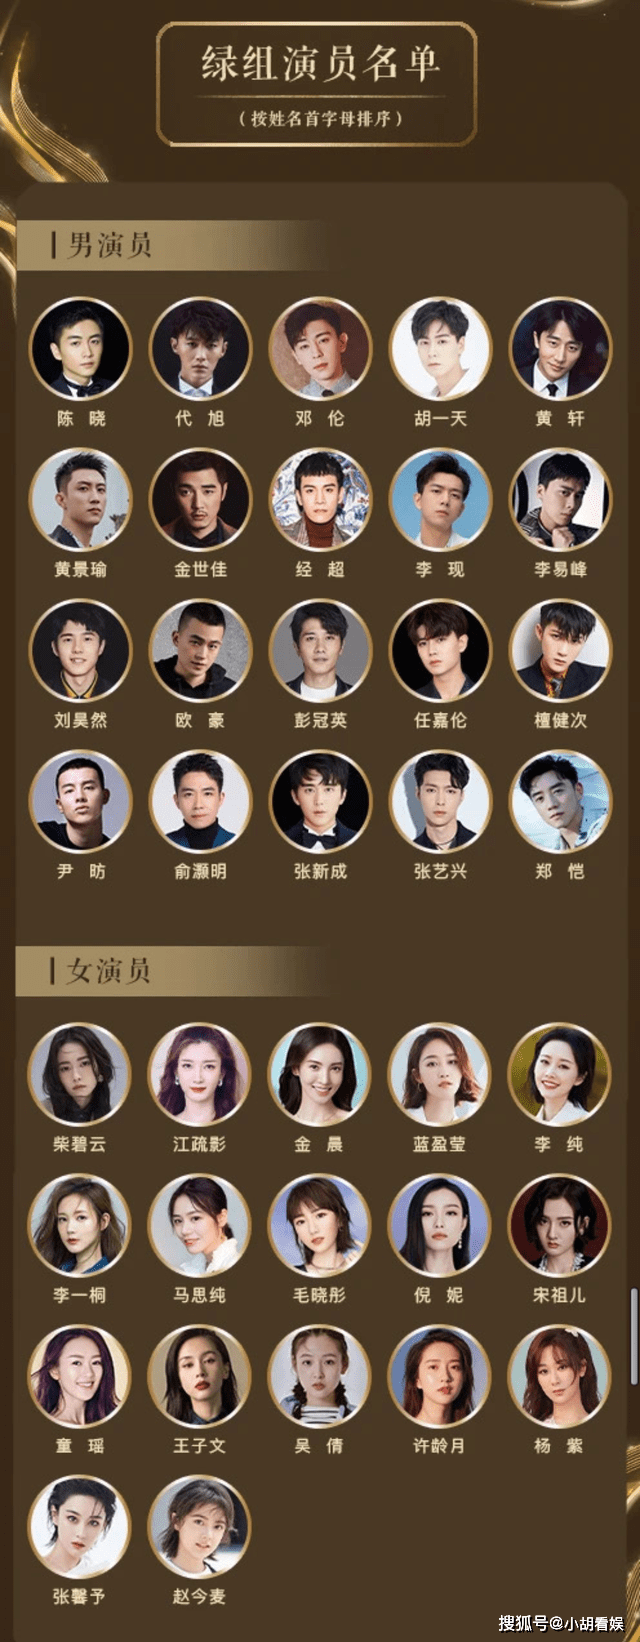 中国电视好演员入围名单公布,投票通道15日24点整开通,你会投给谁?